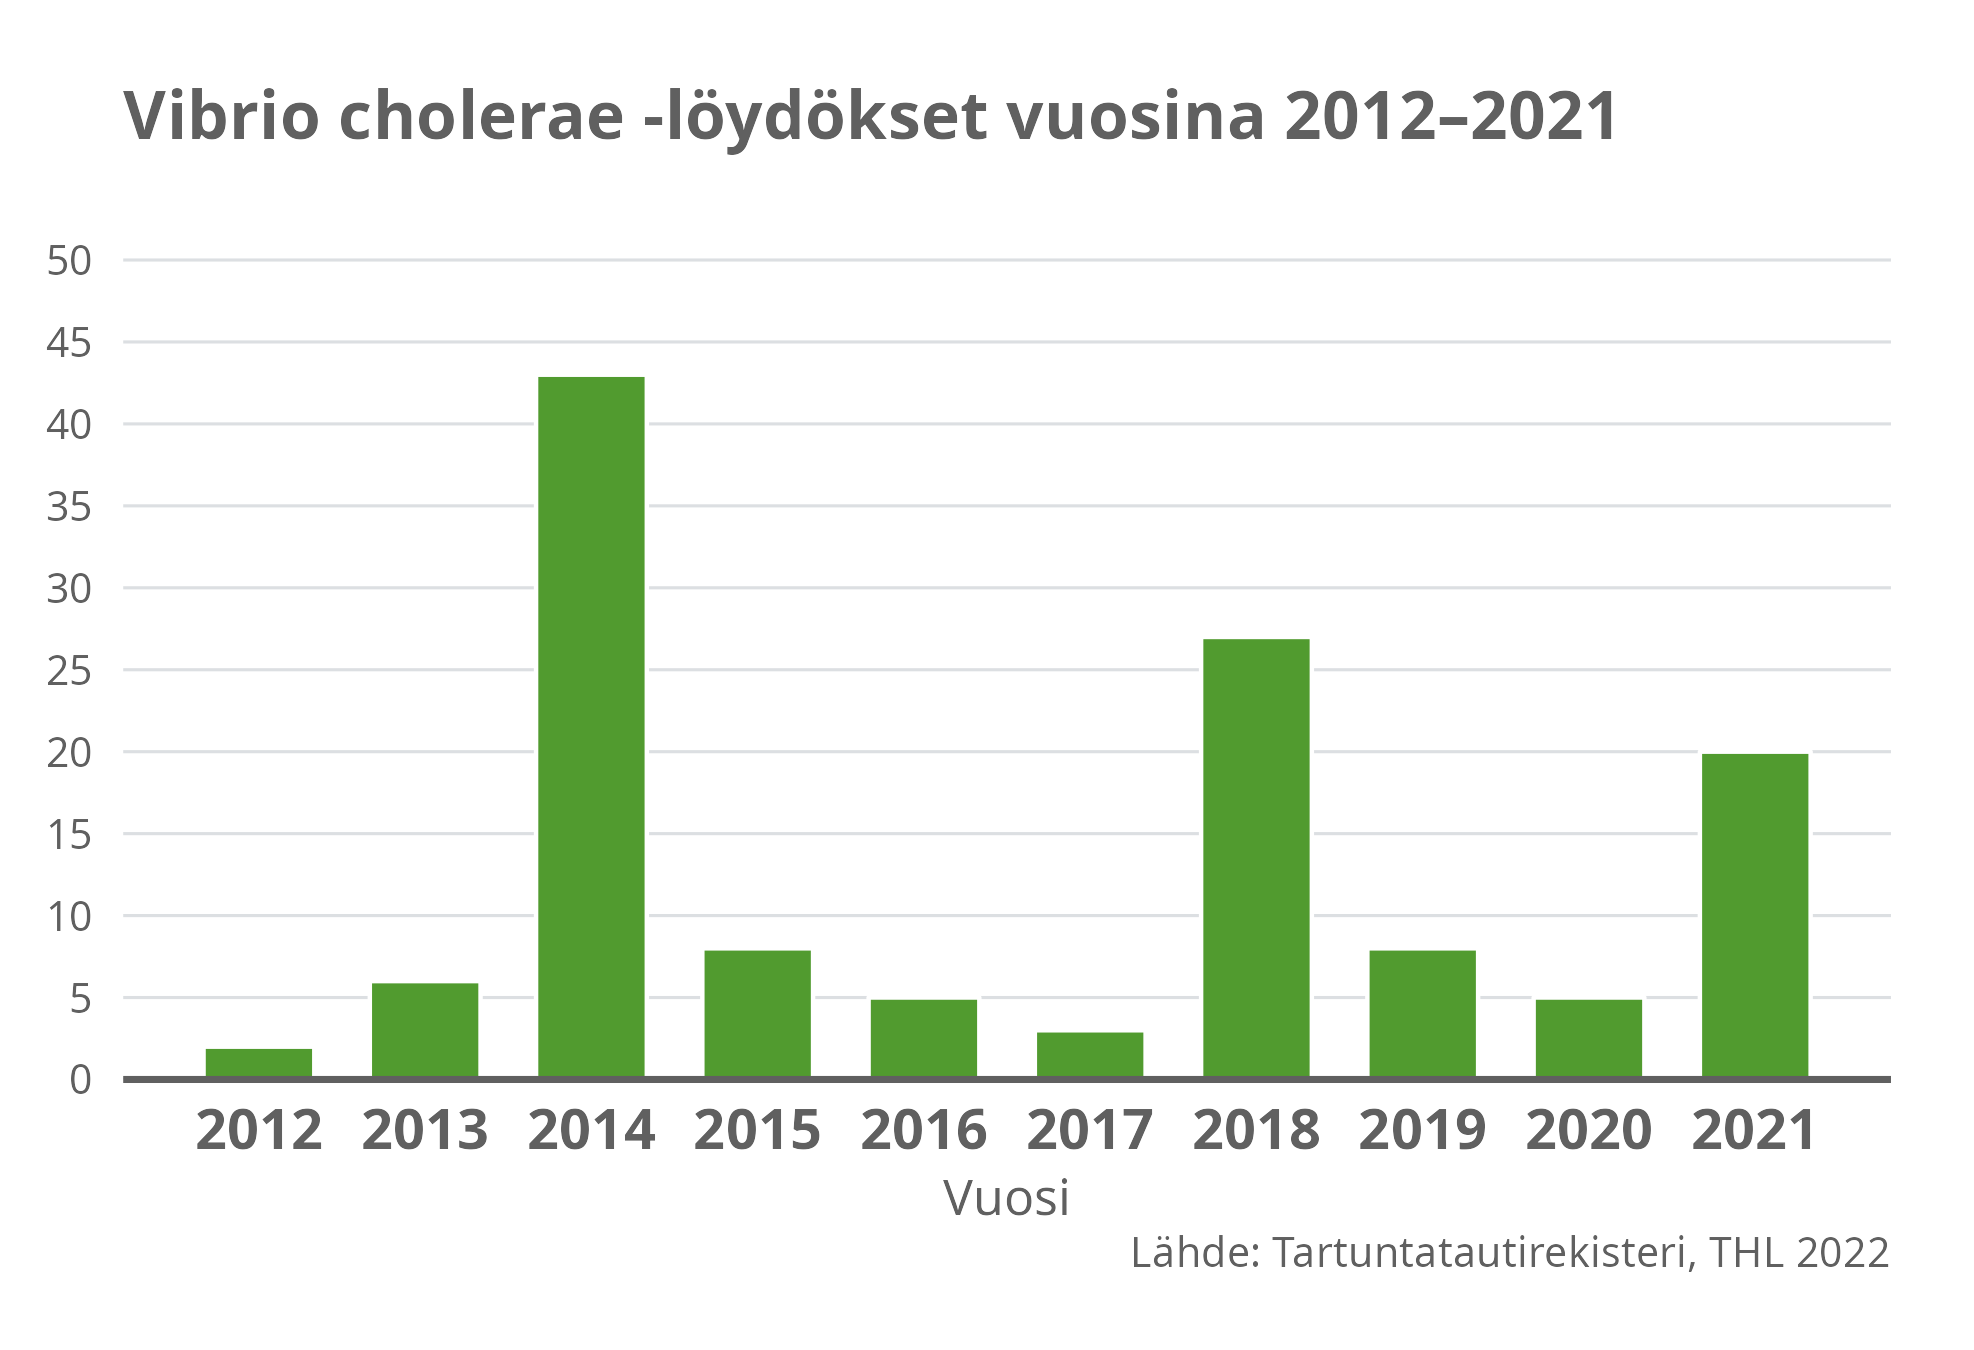 Vibrio cholerae -löydökset vuosina 2012-2021.